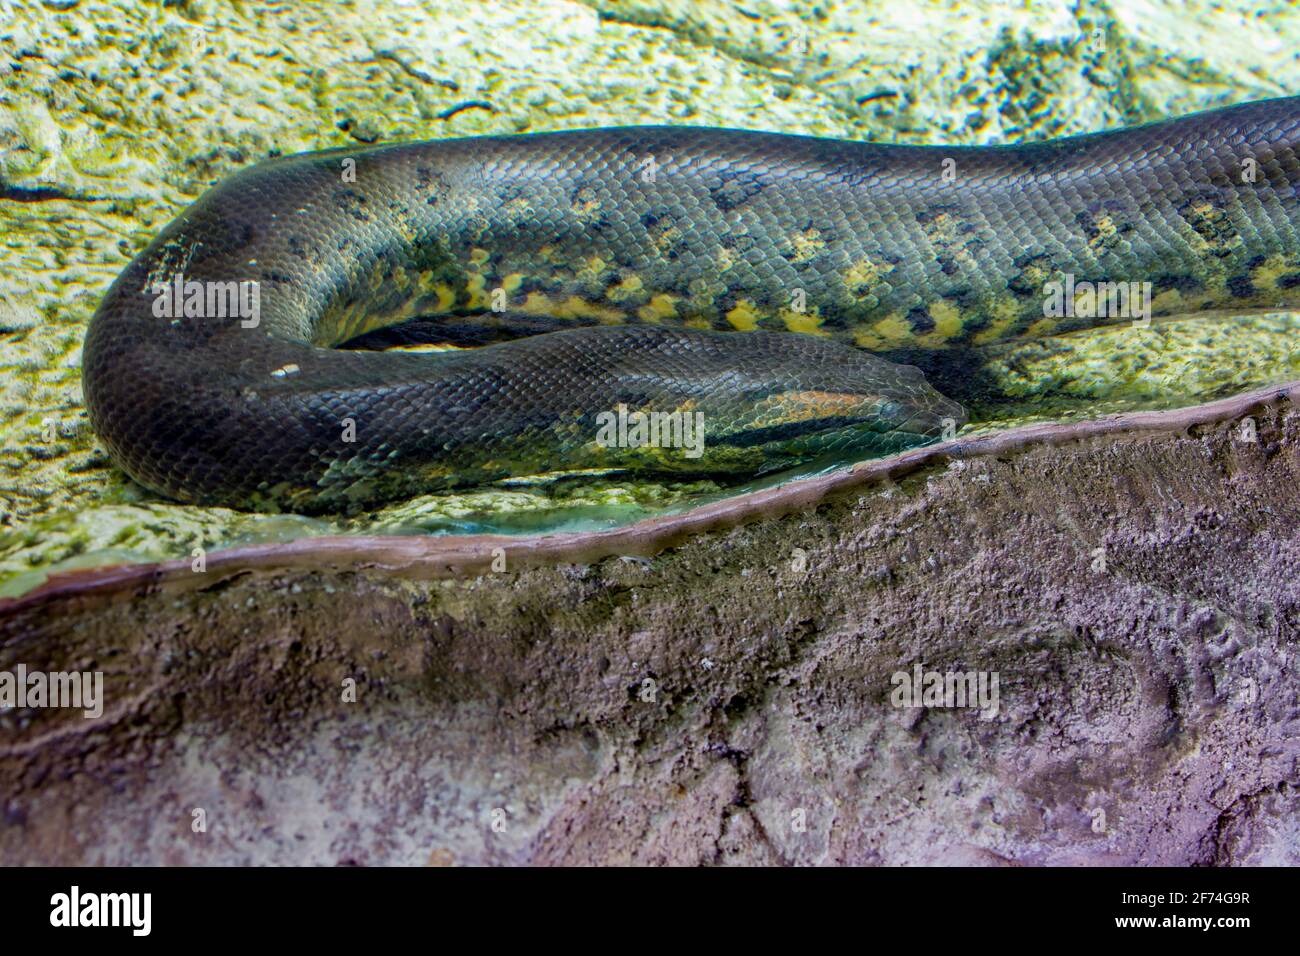 L'anaconda verte (Eunectes murinus) avec des yeux nuageux dans l'eau. C'est une espèce de boa trouvée en Amérique du Sud. C'est le plus lourd. Banque D'Images